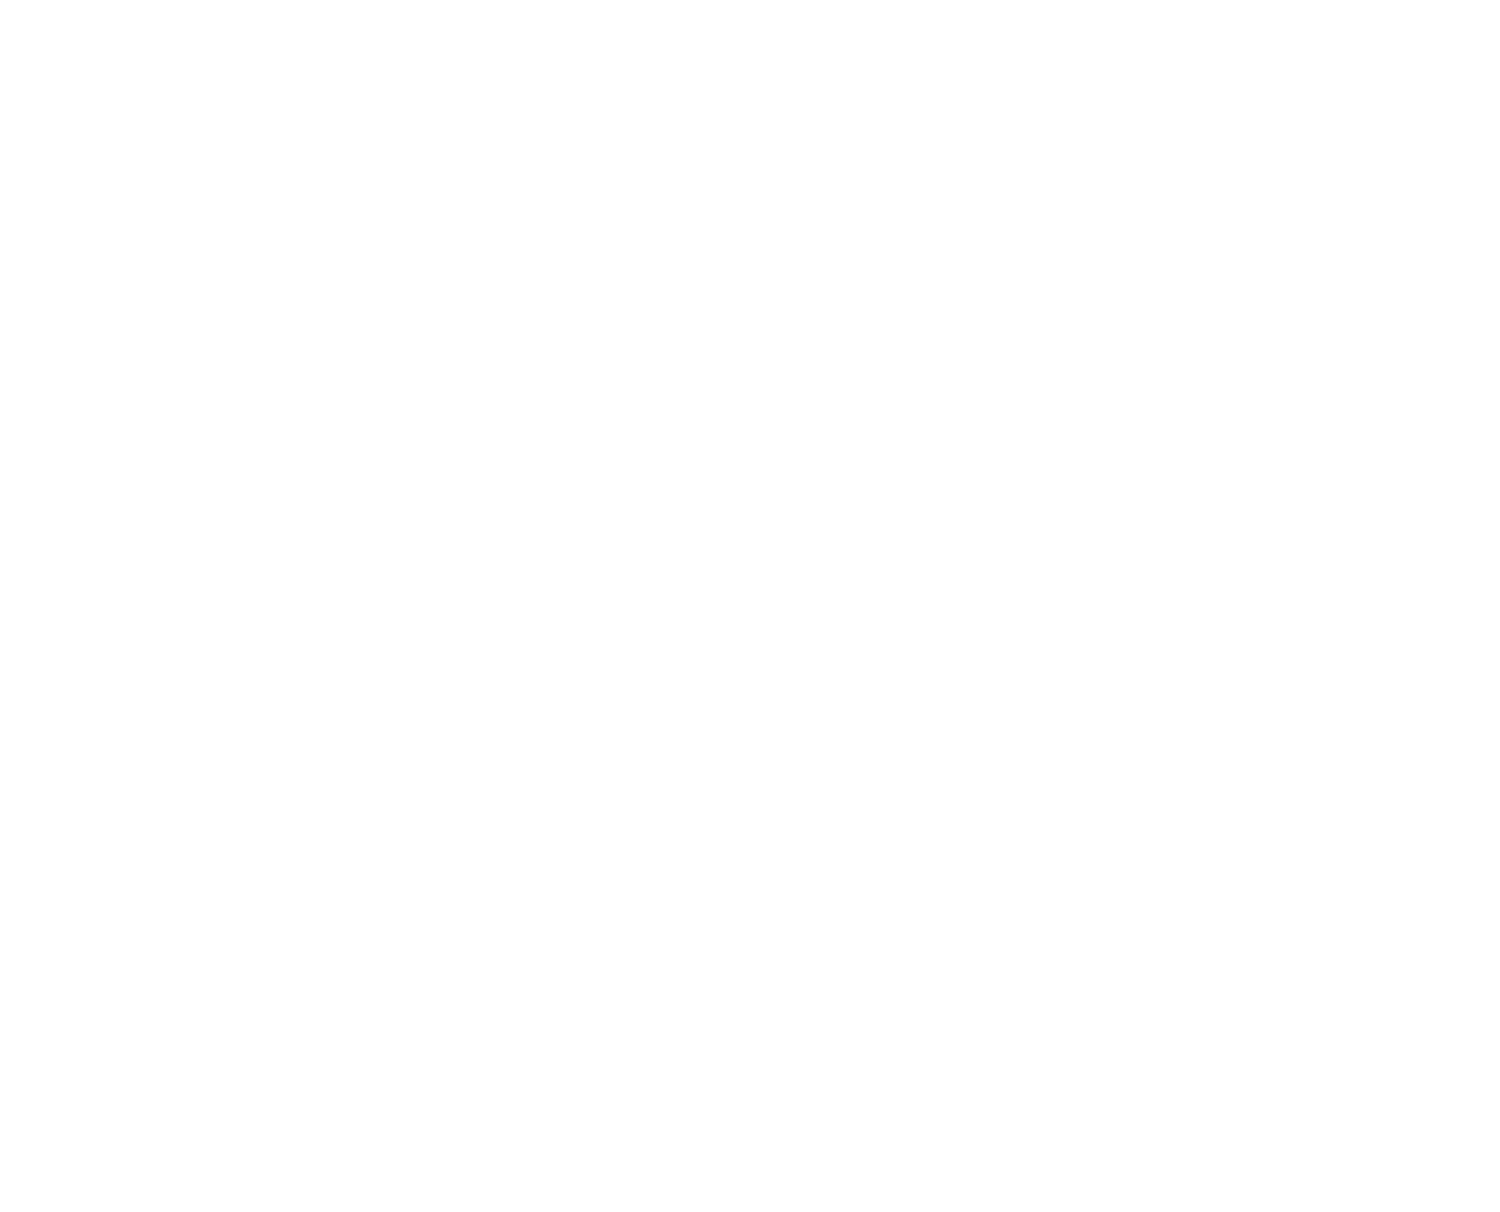 Bosland Growth